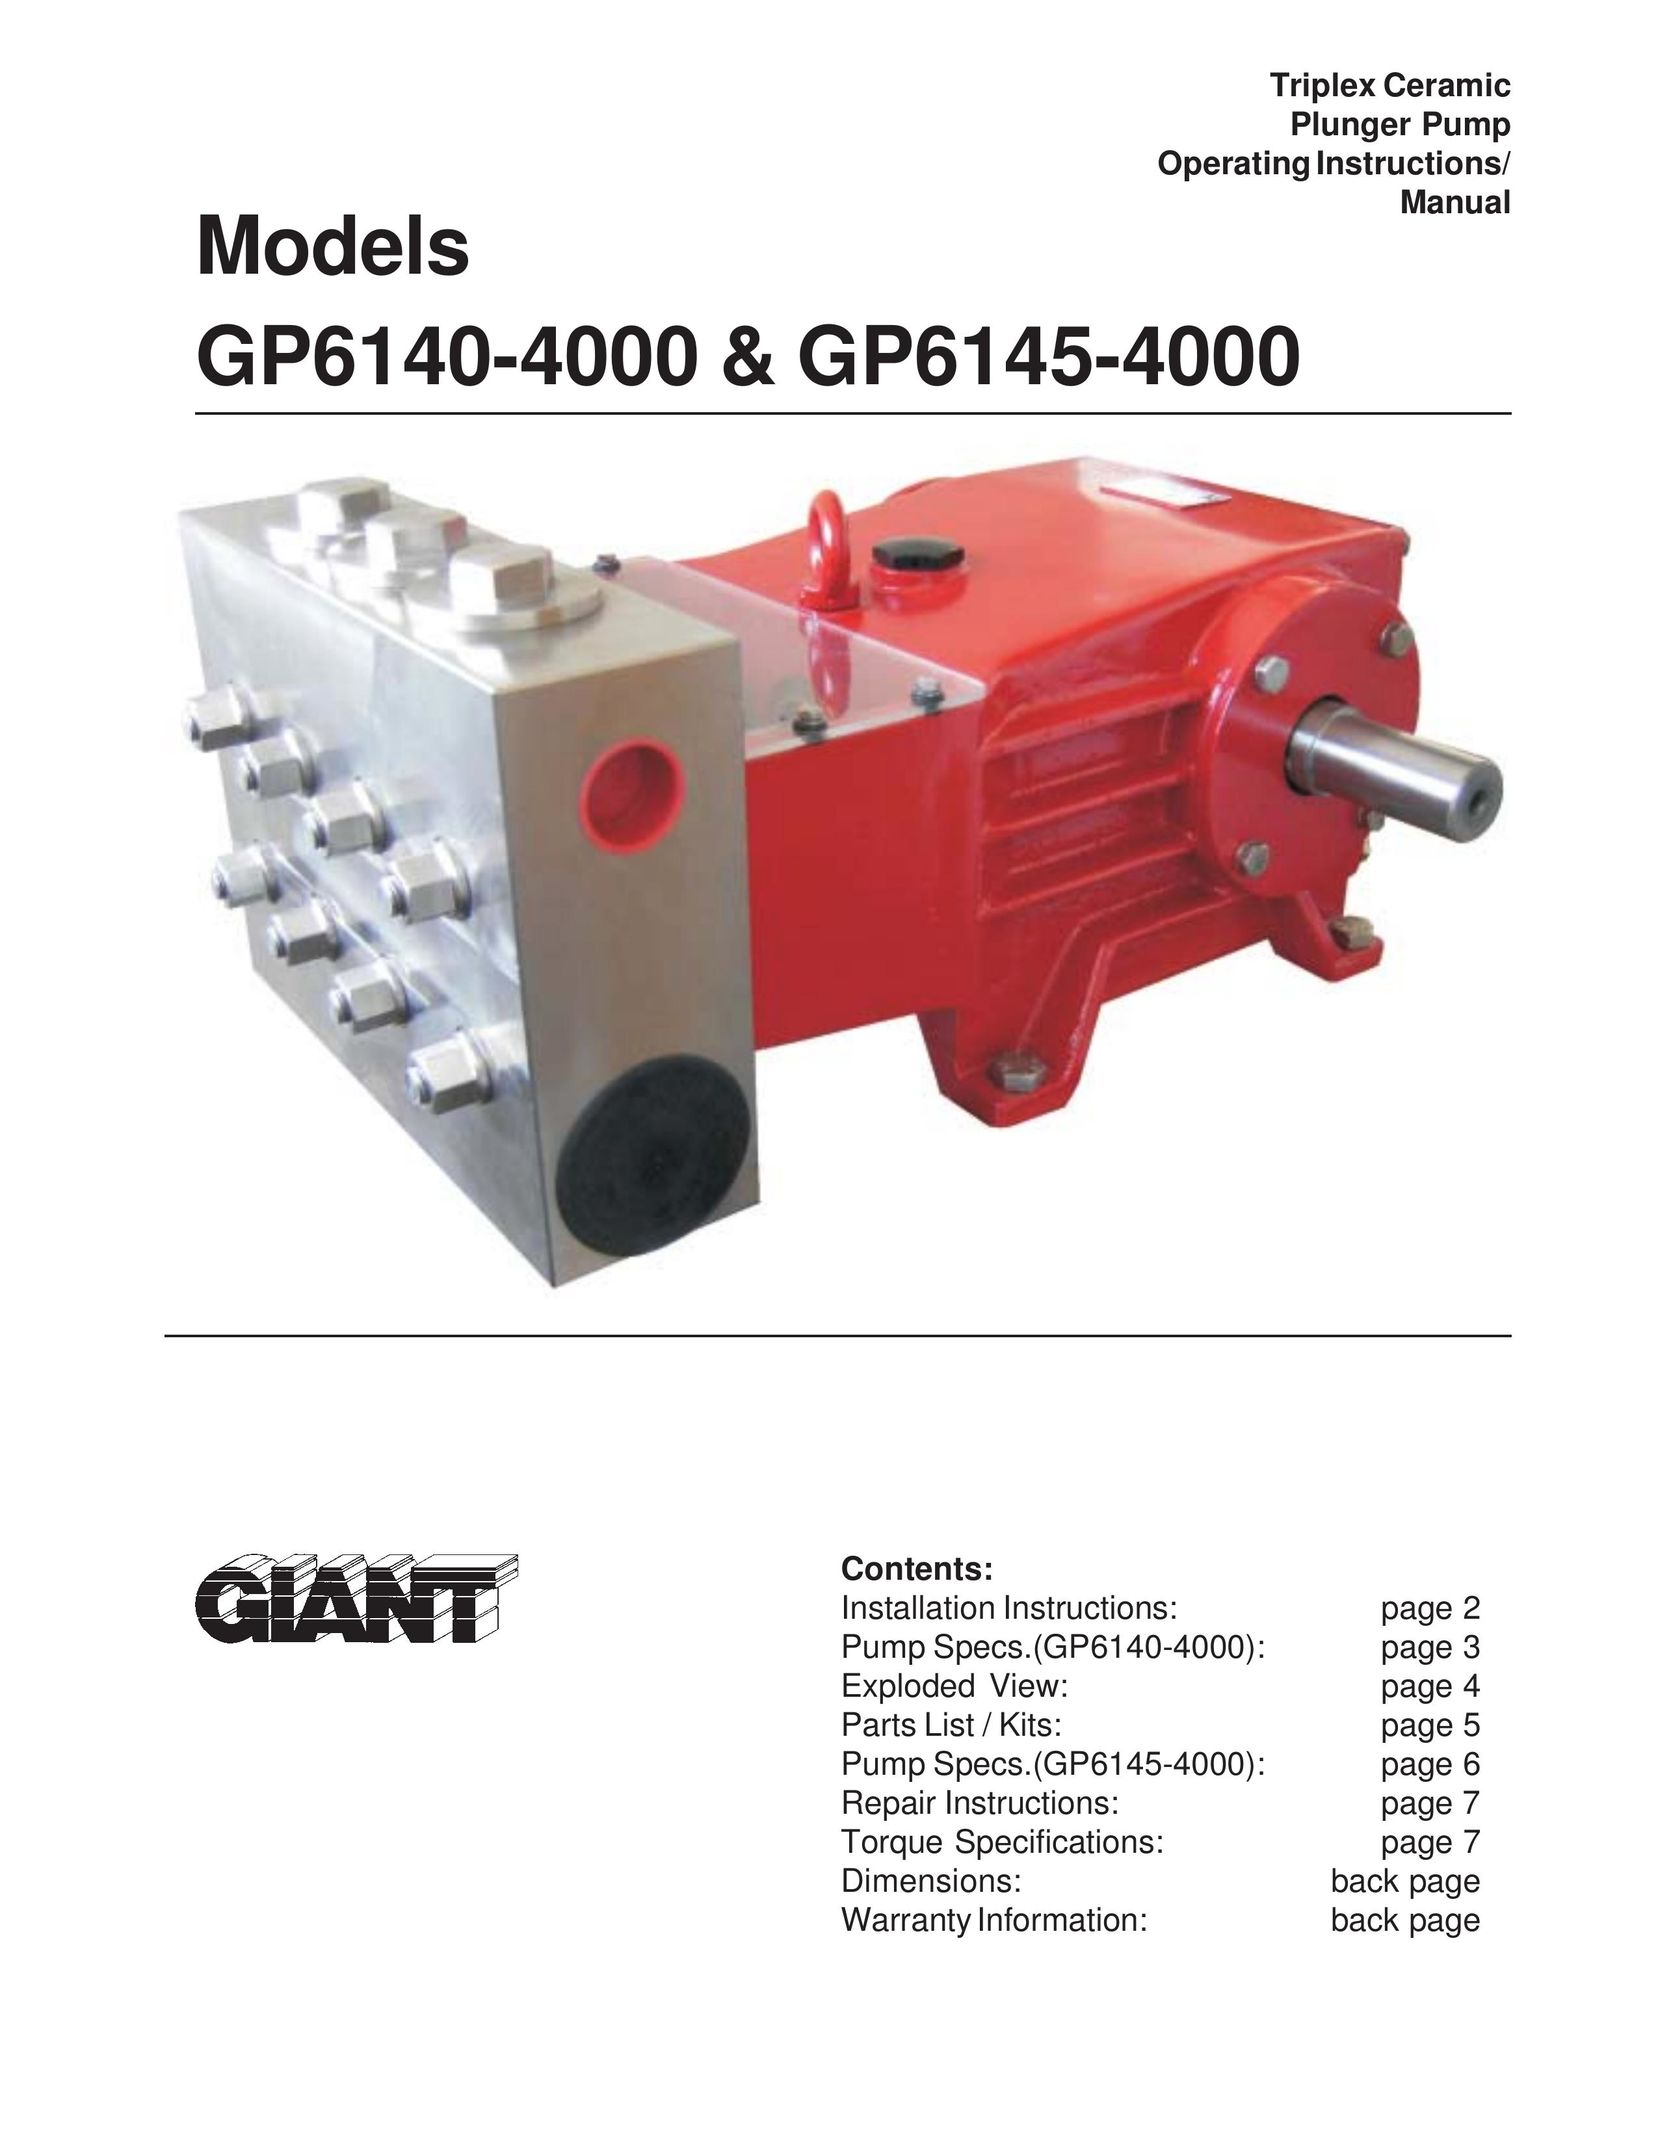 Giant GP6140-4000 Water Pump User Manual